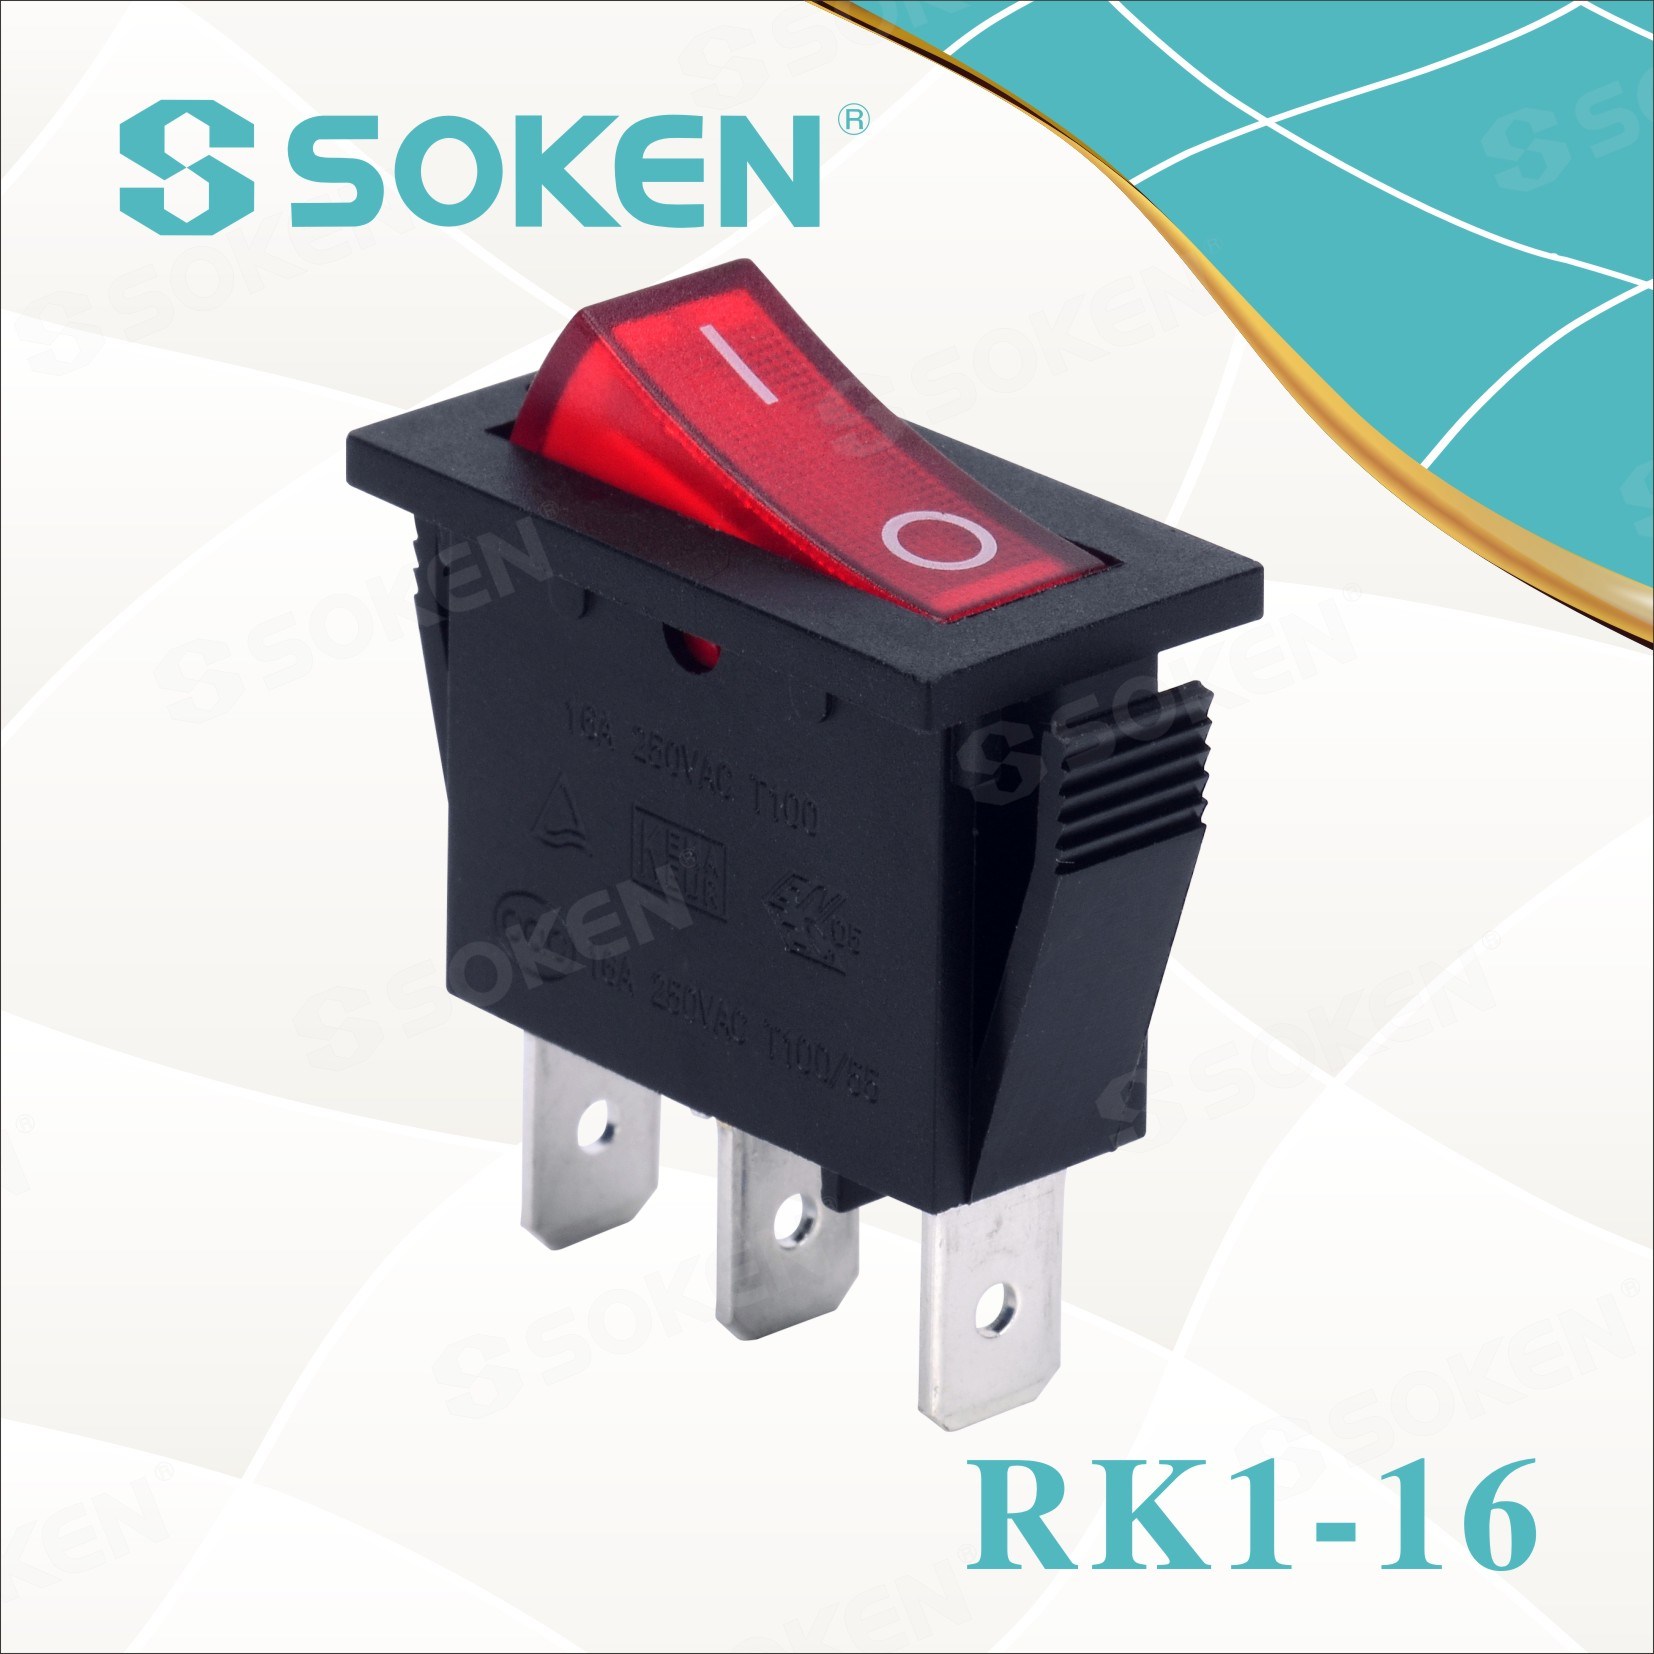 Soken Rk1-16 1X1n B/R on off Rocker Switch